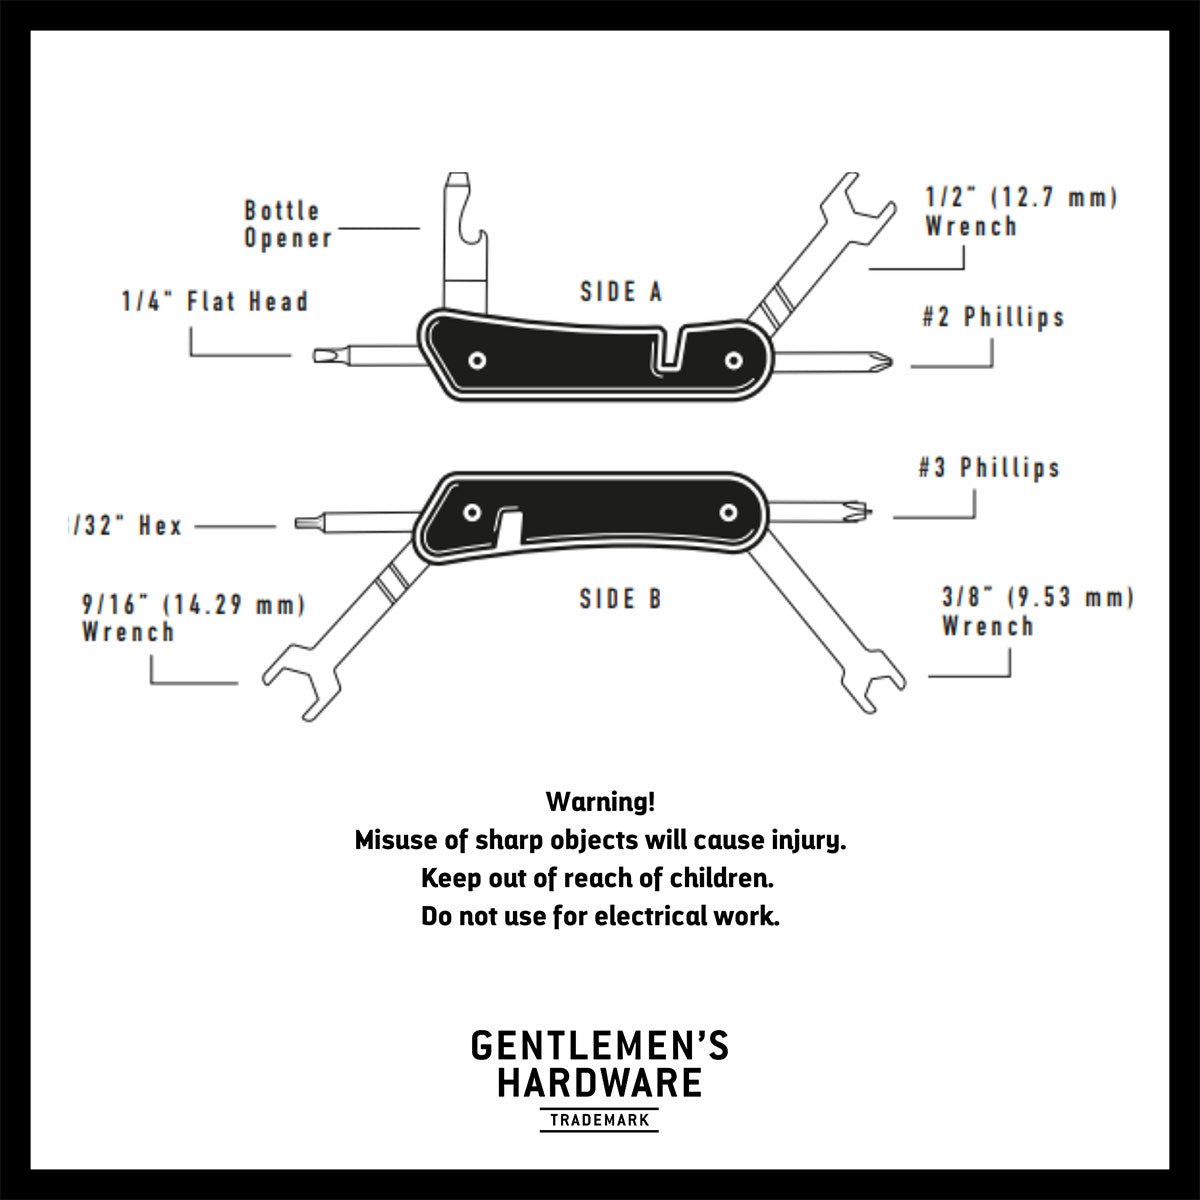 Gentlemen's Hardware Adrenaline Multi-Tool Features Overview